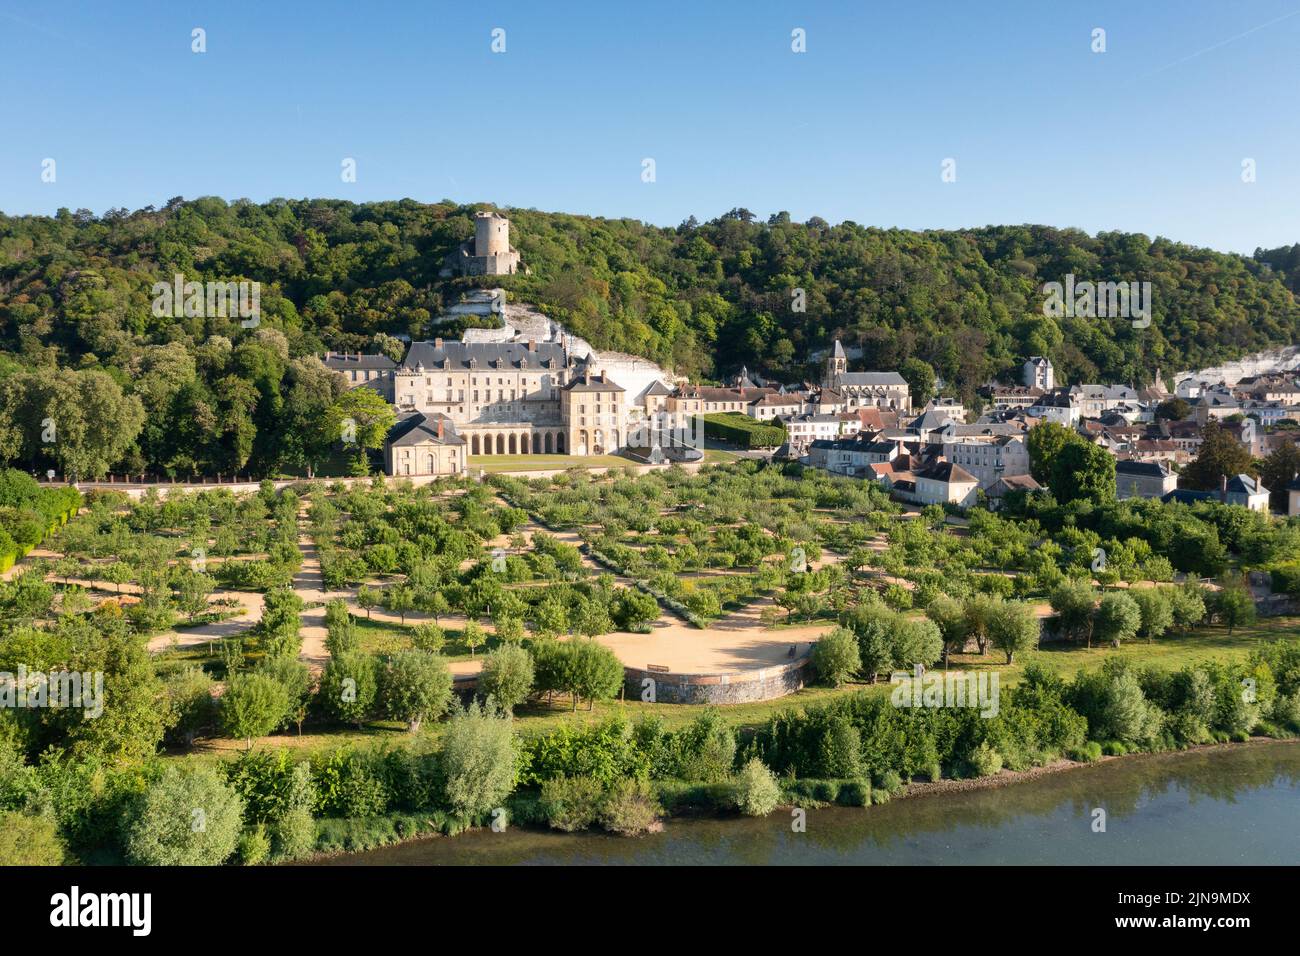 France, Val d'Oise, Vexin Francais Natural Regional Park, La Roche Guyon, labelled Les Plus Beaux Villages de France (The Most Beautiful Villages of F Stock Photo